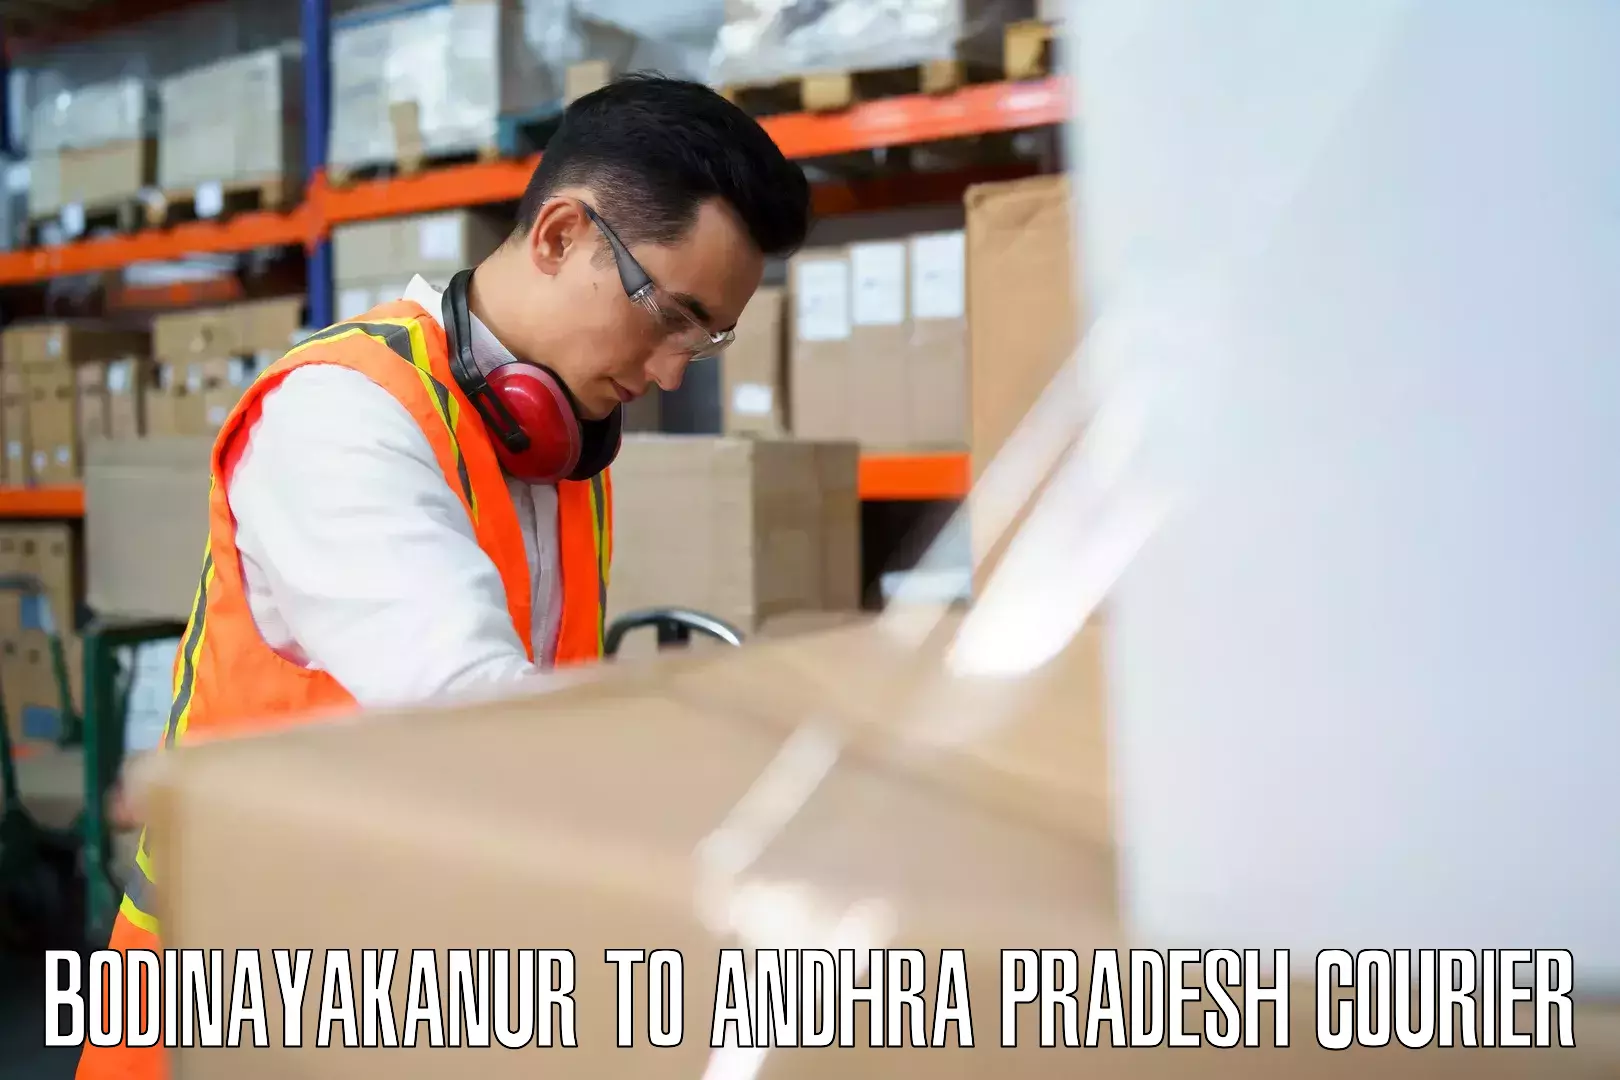 Luggage delivery network Bodinayakanur to Vissannapeta